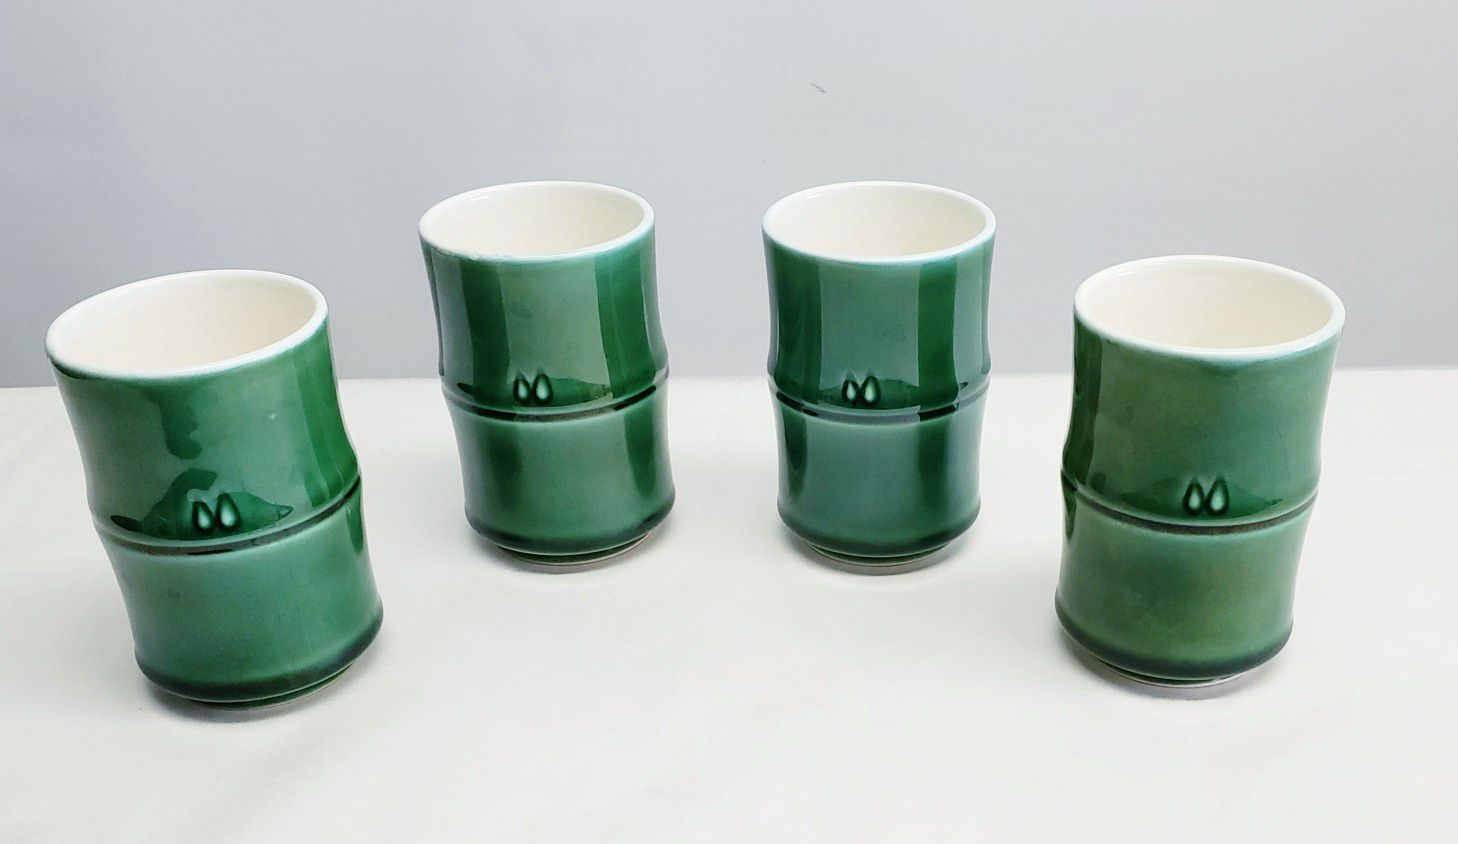 Saki/Tea Cup Set